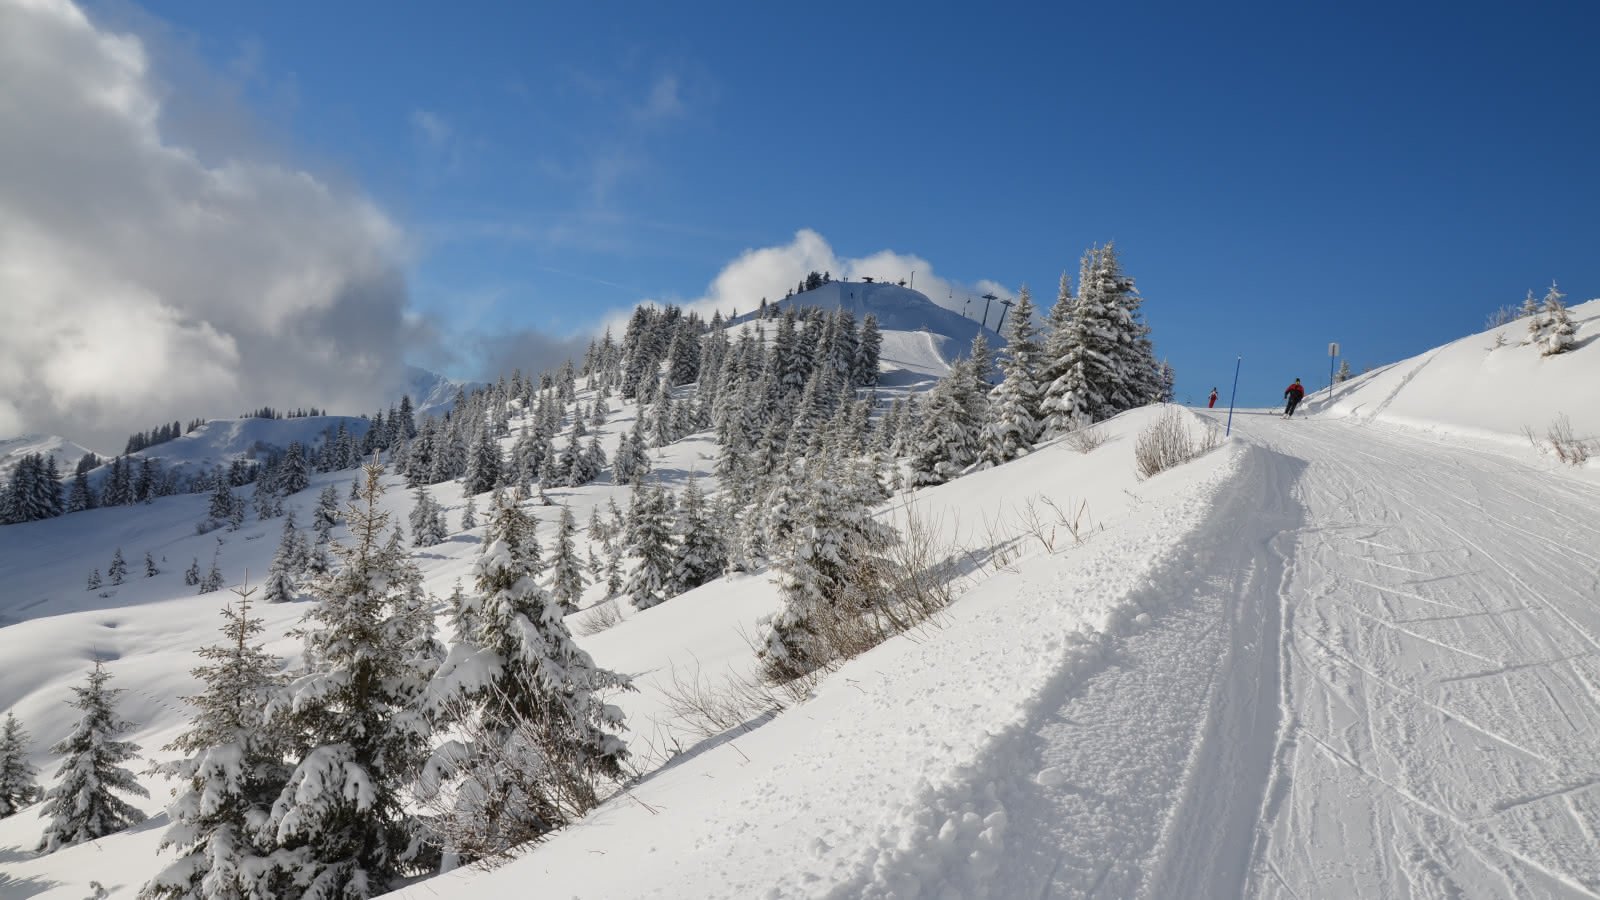 Skieurs sur la piste bleue La Controverse, sur le domaine skiable Les Portes du Mont-Blanc